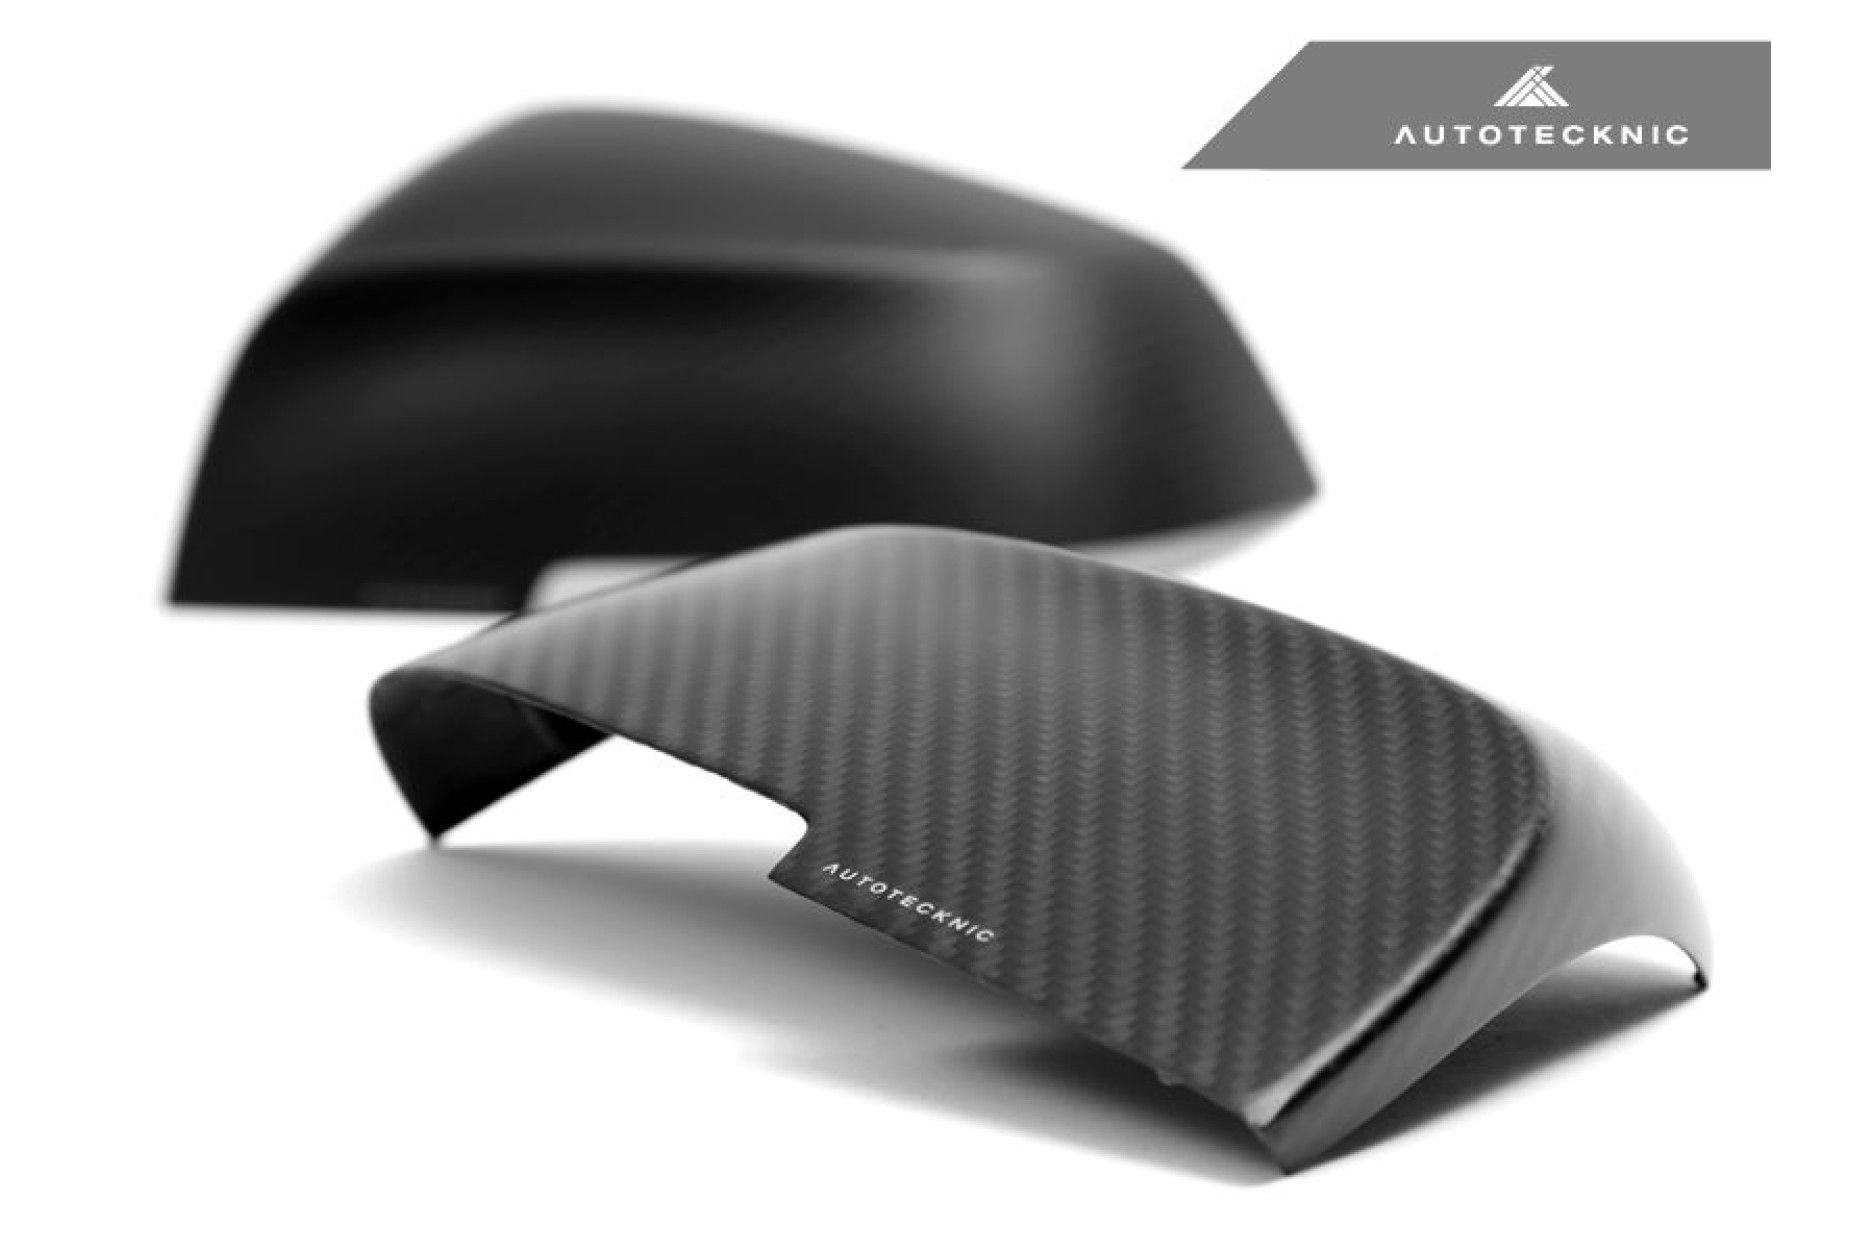 AutoTecknic Carbon Spiegelkappen Austausch - F87 M2 - online kaufen bei CFD